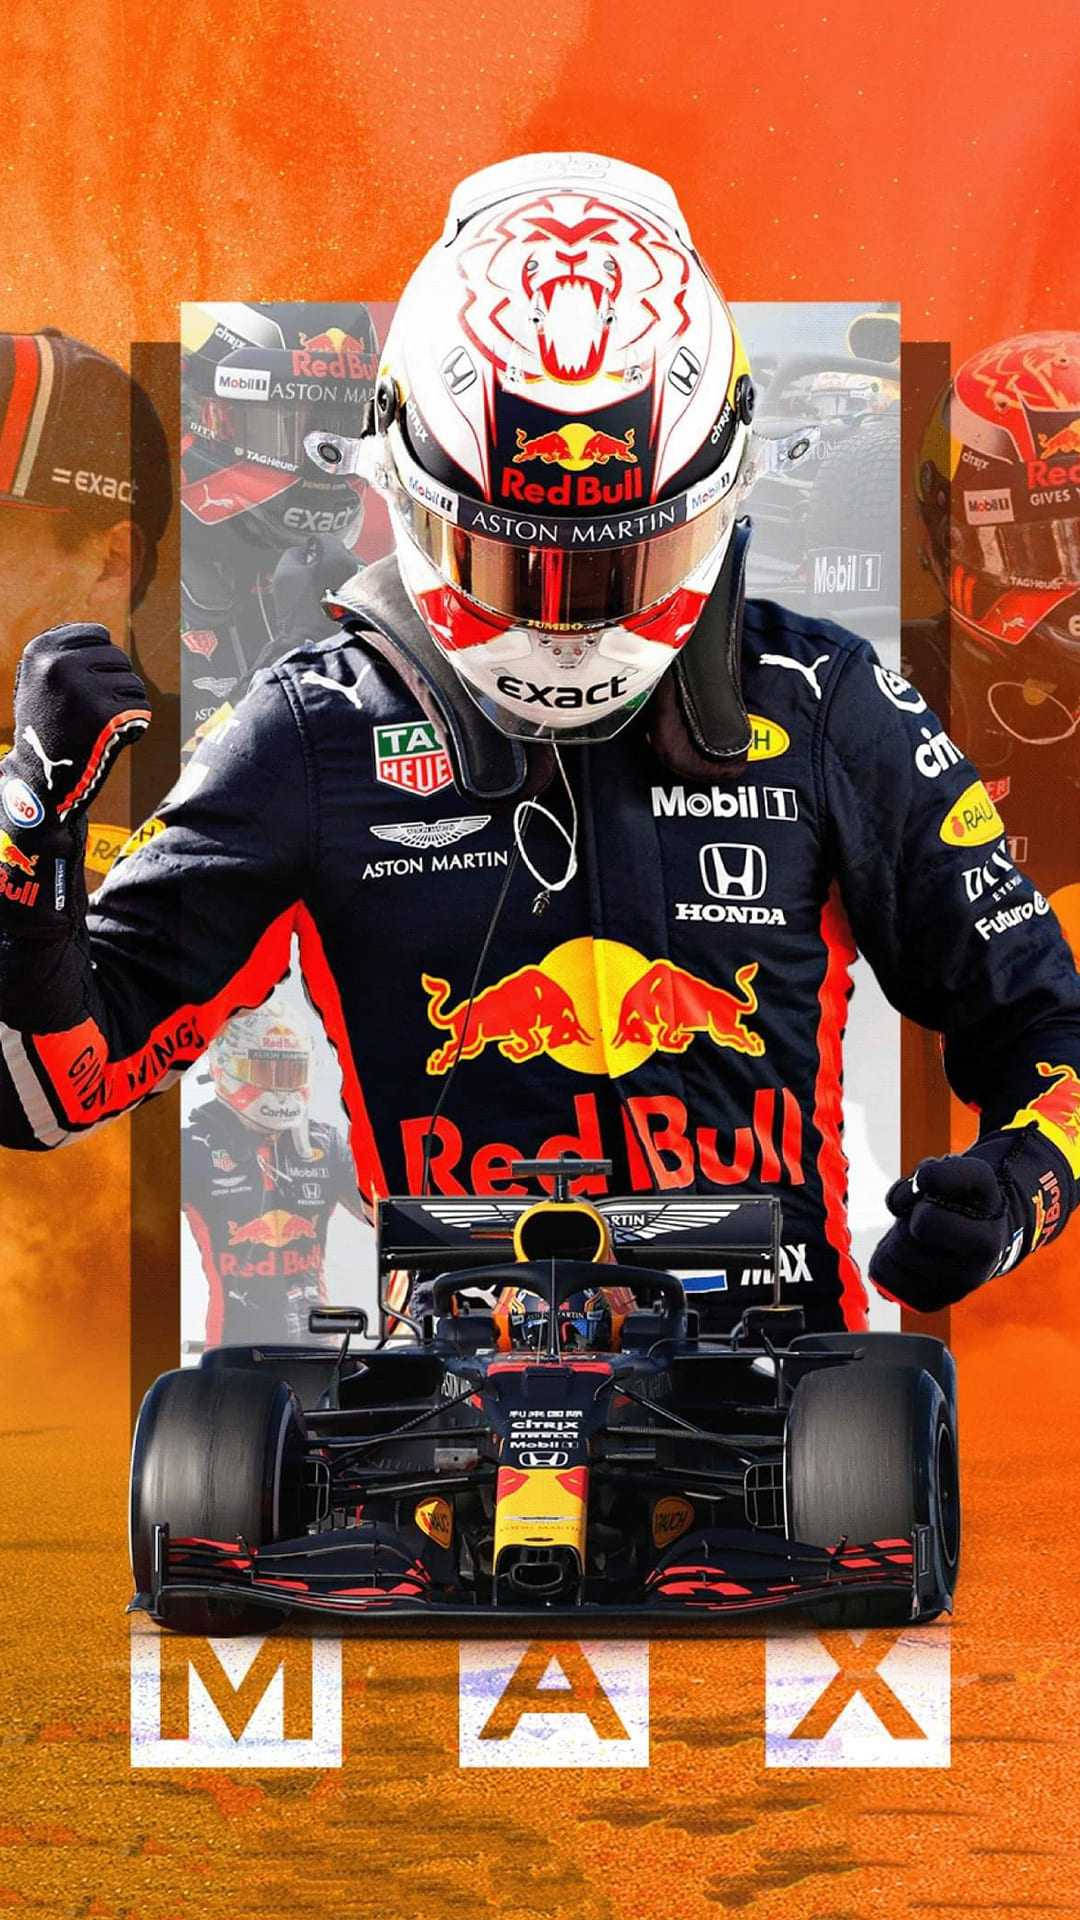 Max Verstappen Racing In His Signature Red Bull Car